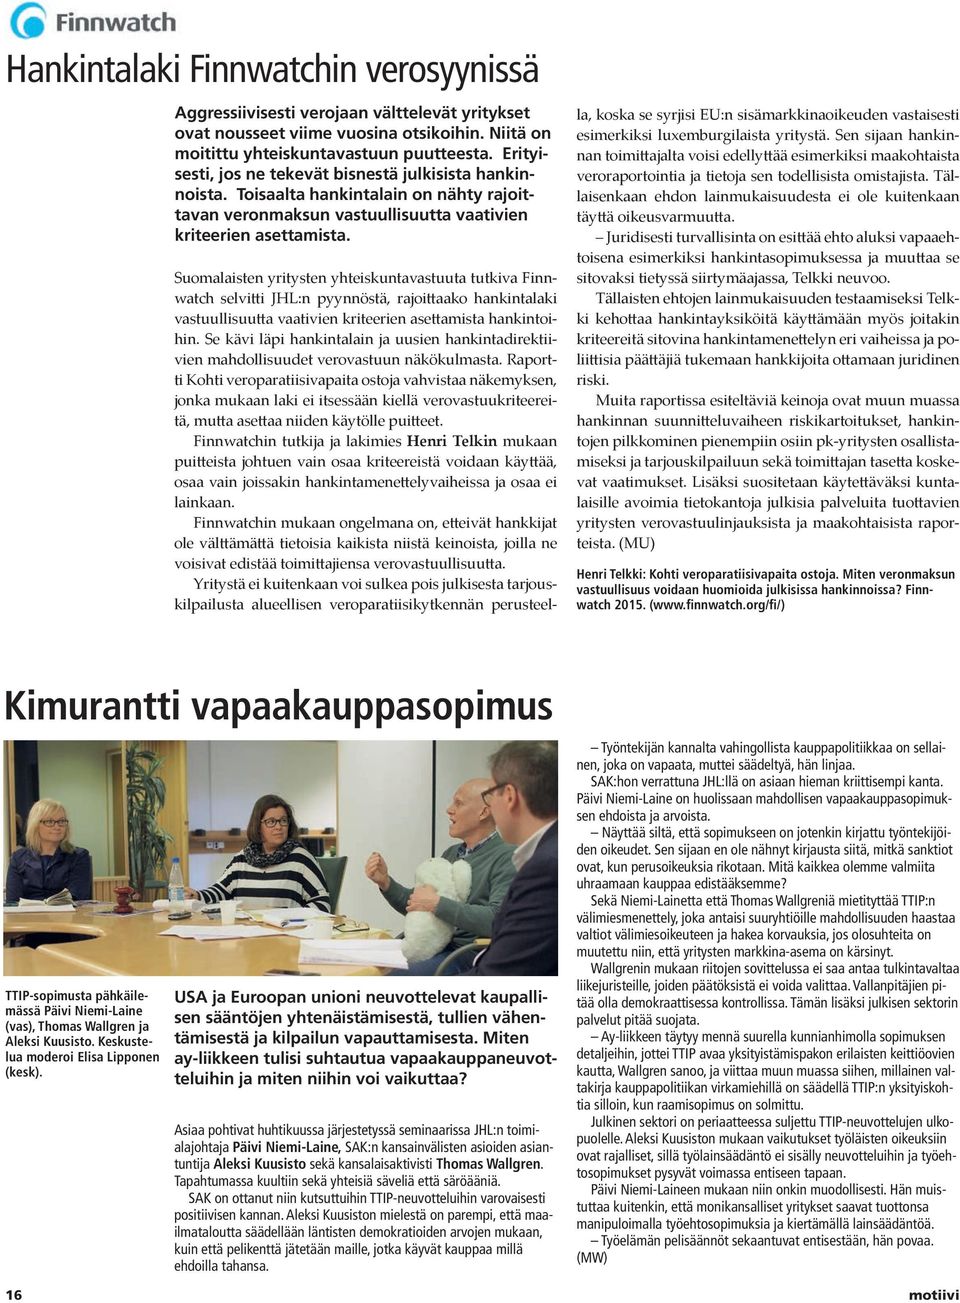 Suomalaisten yritysten yhteiskuntavastuuta tutkiva Finnwatch selvitti JHL:n pyynnöstä, rajoittaako hankintalaki vastuullisuutta vaativien kriteerien asettamista hankintoihin.